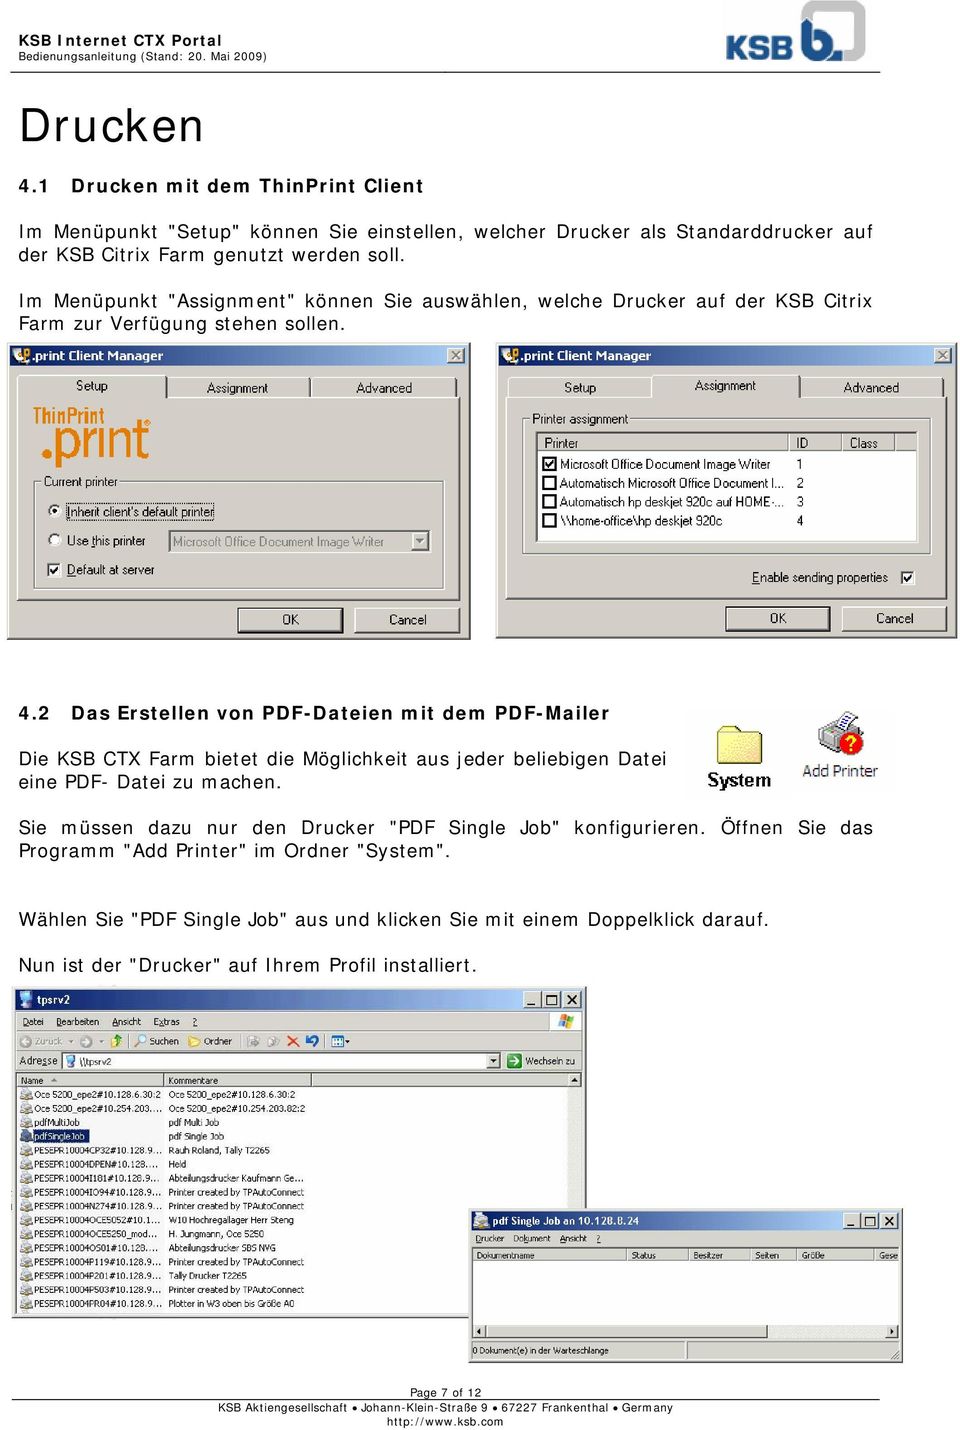 2 Das Erstellen von PDF-Dateien mit dem PDF-Mailer Die KSB CTX Farm bietet die Möglichkeit aus jeder beliebigen Datei eine PDF- Datei zu machen.